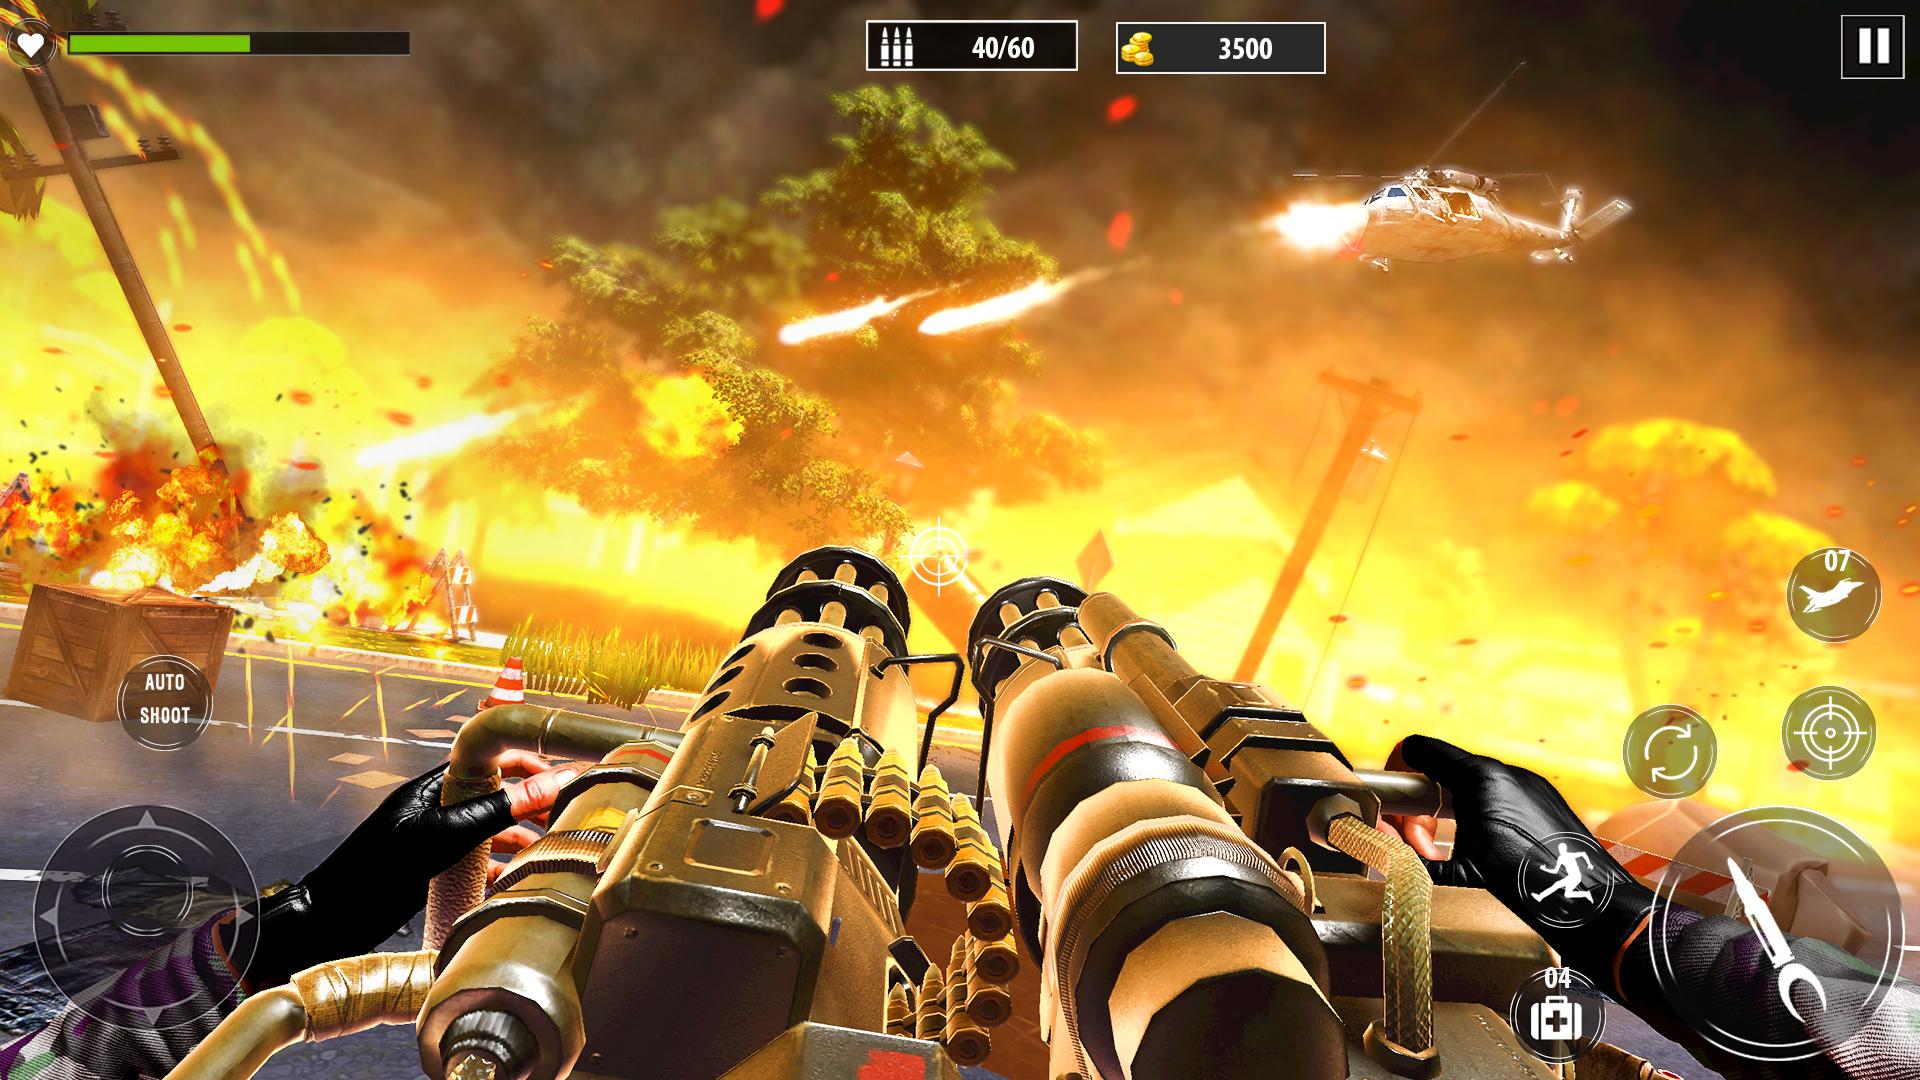 jeu de guerre: jeux hors ligne APK pour Android Télécharger